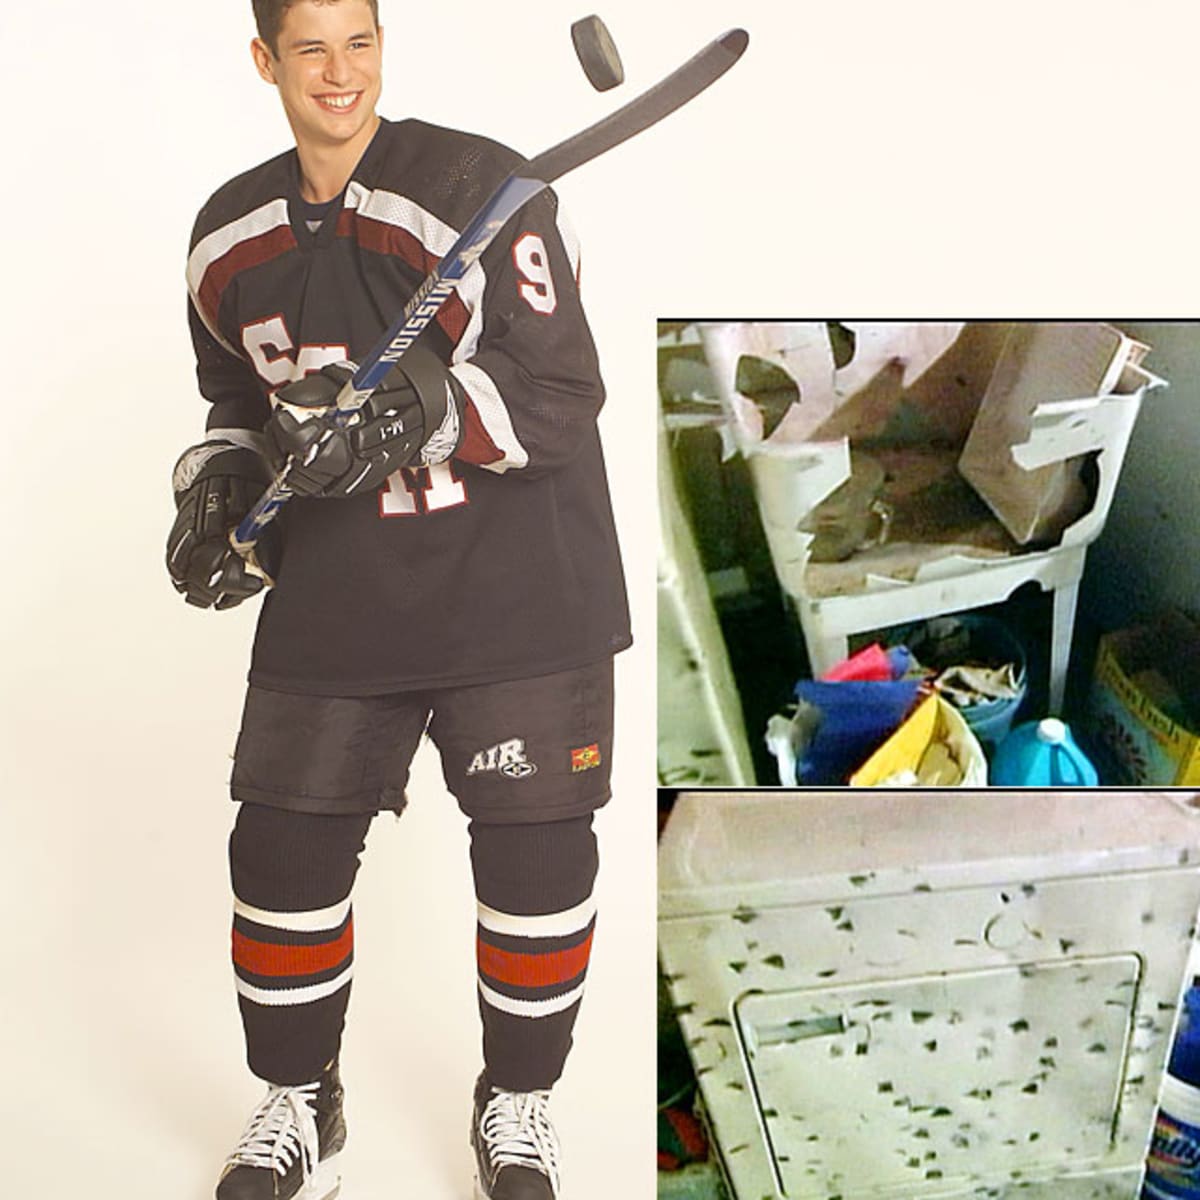 Ed Olczyk Jerseys  Ed Olczyk Pittsburgh Penguins Jerseys & Gear